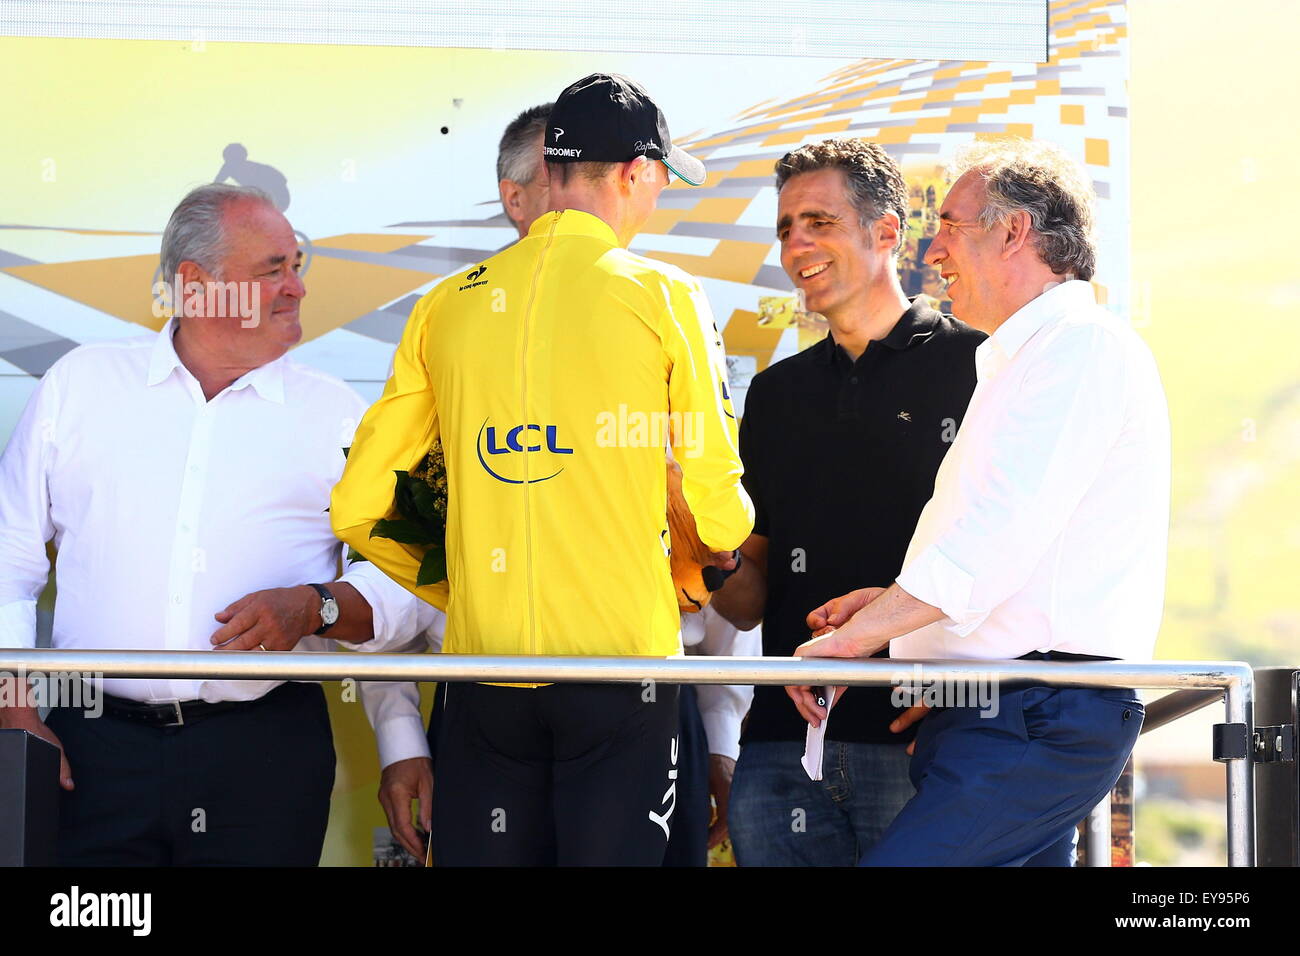 Victoire Chris Froome - Team Sky/Miguel Indurain/Francois Bayrou- 14.07.2015 - Tour de France 2015 - Etape 10 - Tarbes/La Pierre Saint Martin.Photo : Blondeau/Aop Press/Icon Sport. *** Local Caption Stock Photo